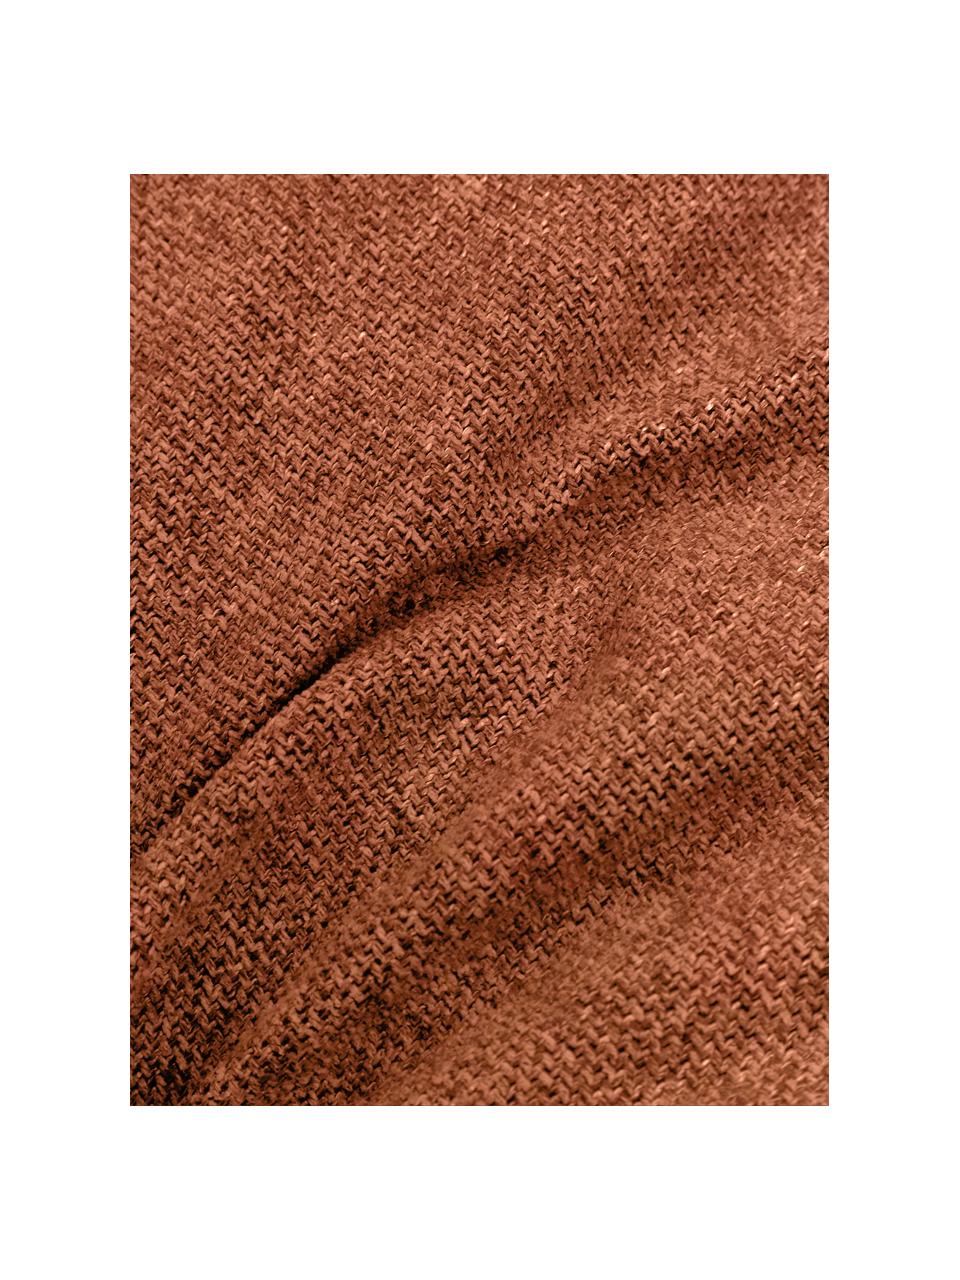 Sofa-Kissen Lennon, Bezug: 100% Polyester, Webstoff Terrakotta, B 60 x L 60 cm